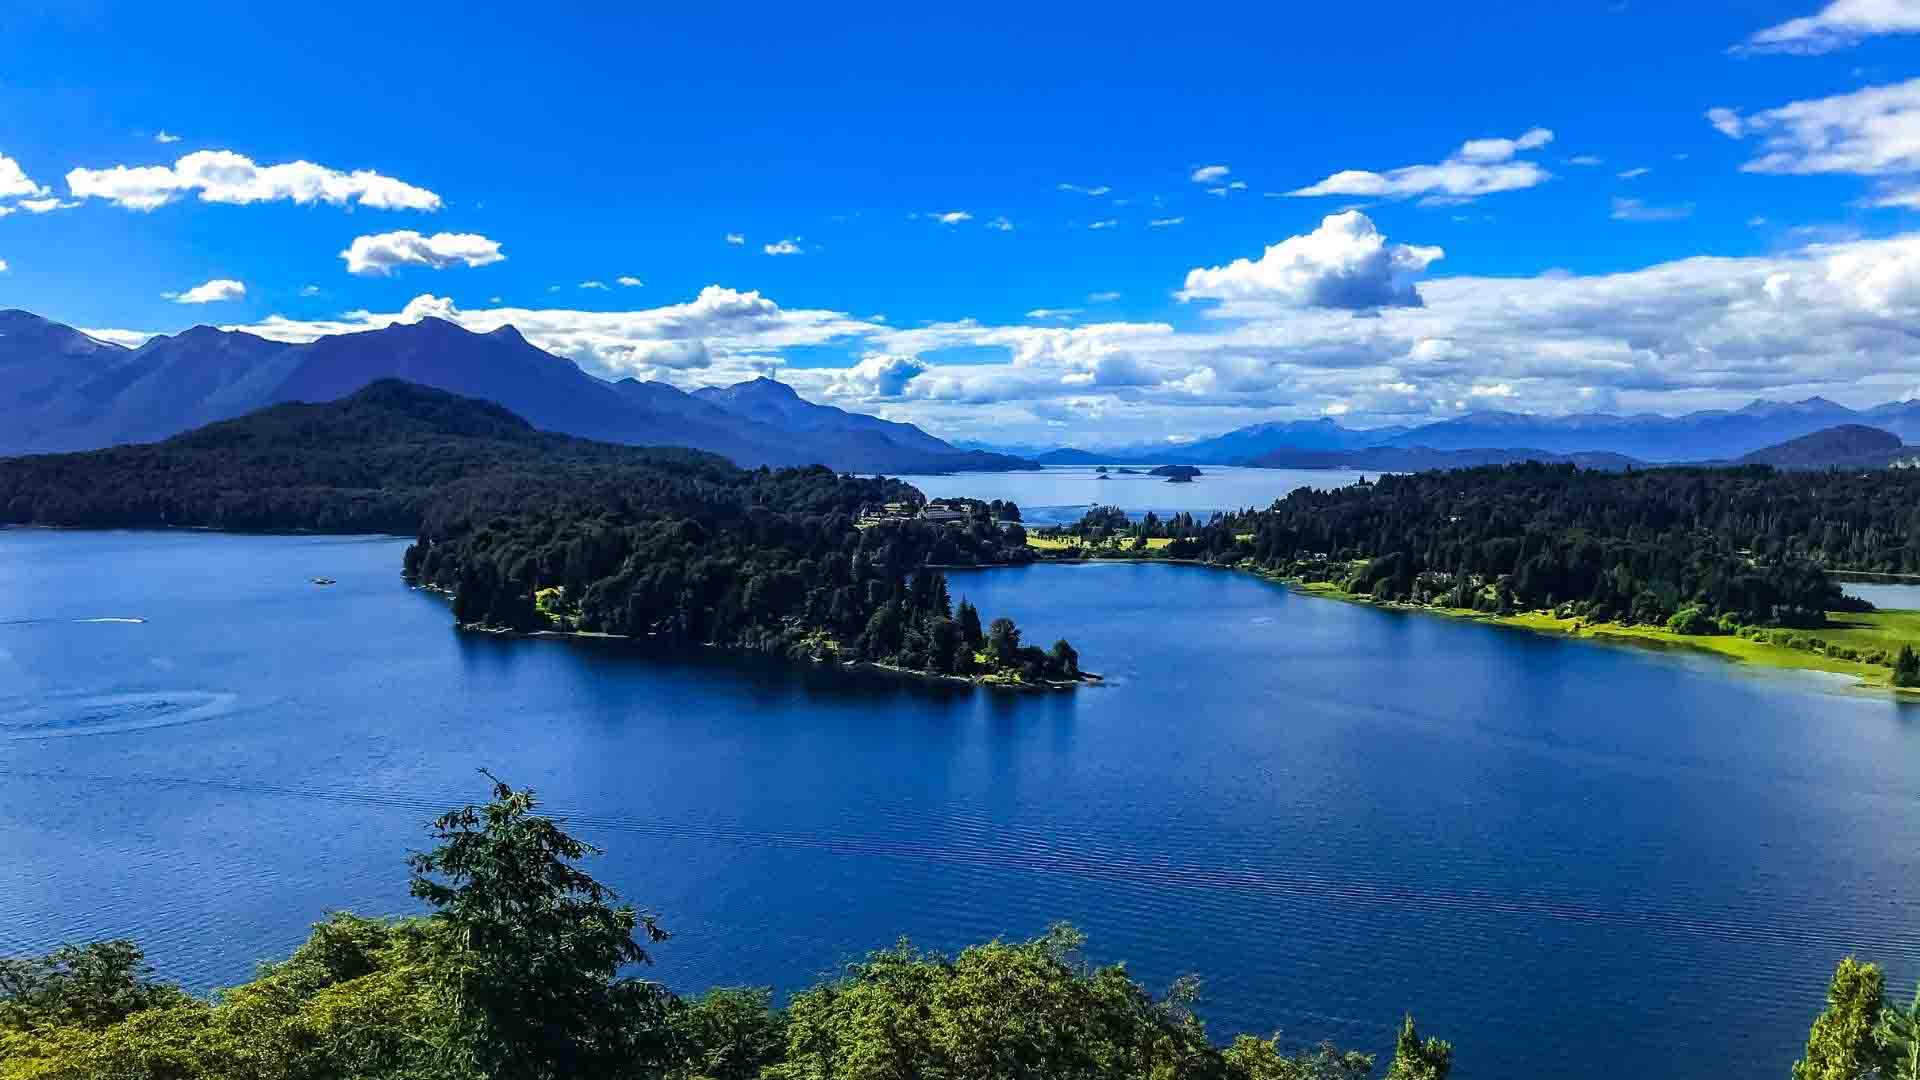  Argentina | Hiking El Circuito Chico near Bariloche 